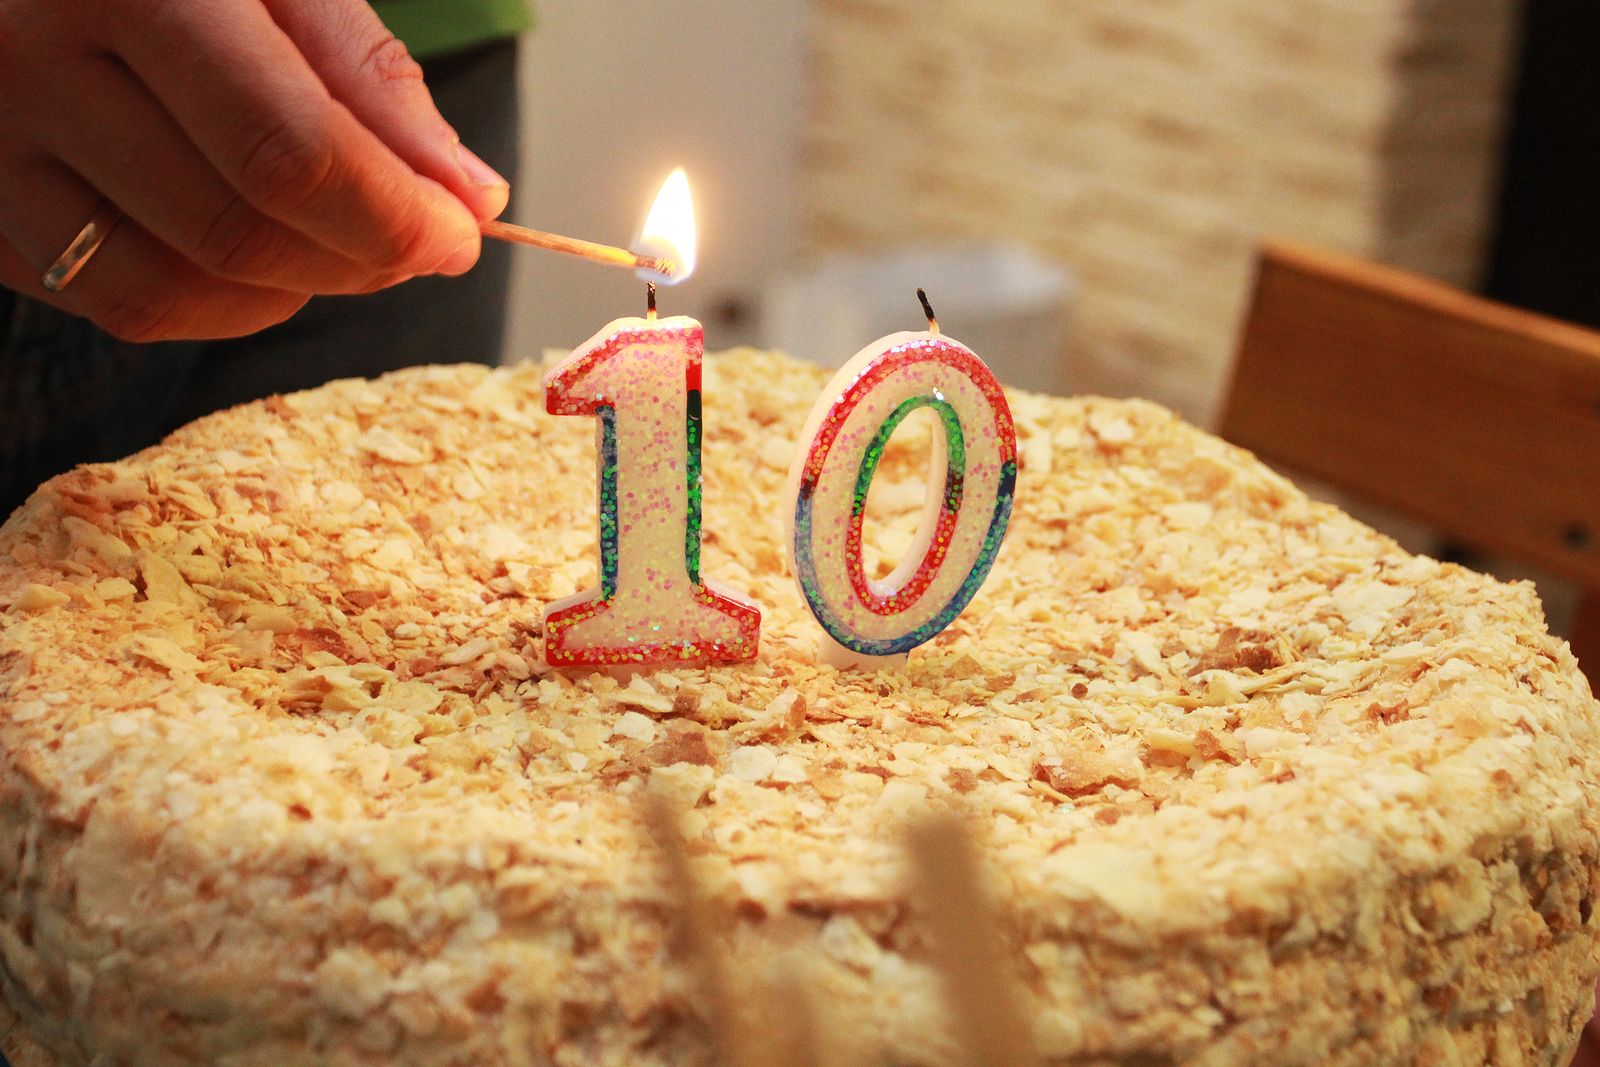 Un niño celebra su 10 cumpleaños, pero no acude nadie: "Me dio mucha penita ver a mi niño solito". Foto: Bigstock